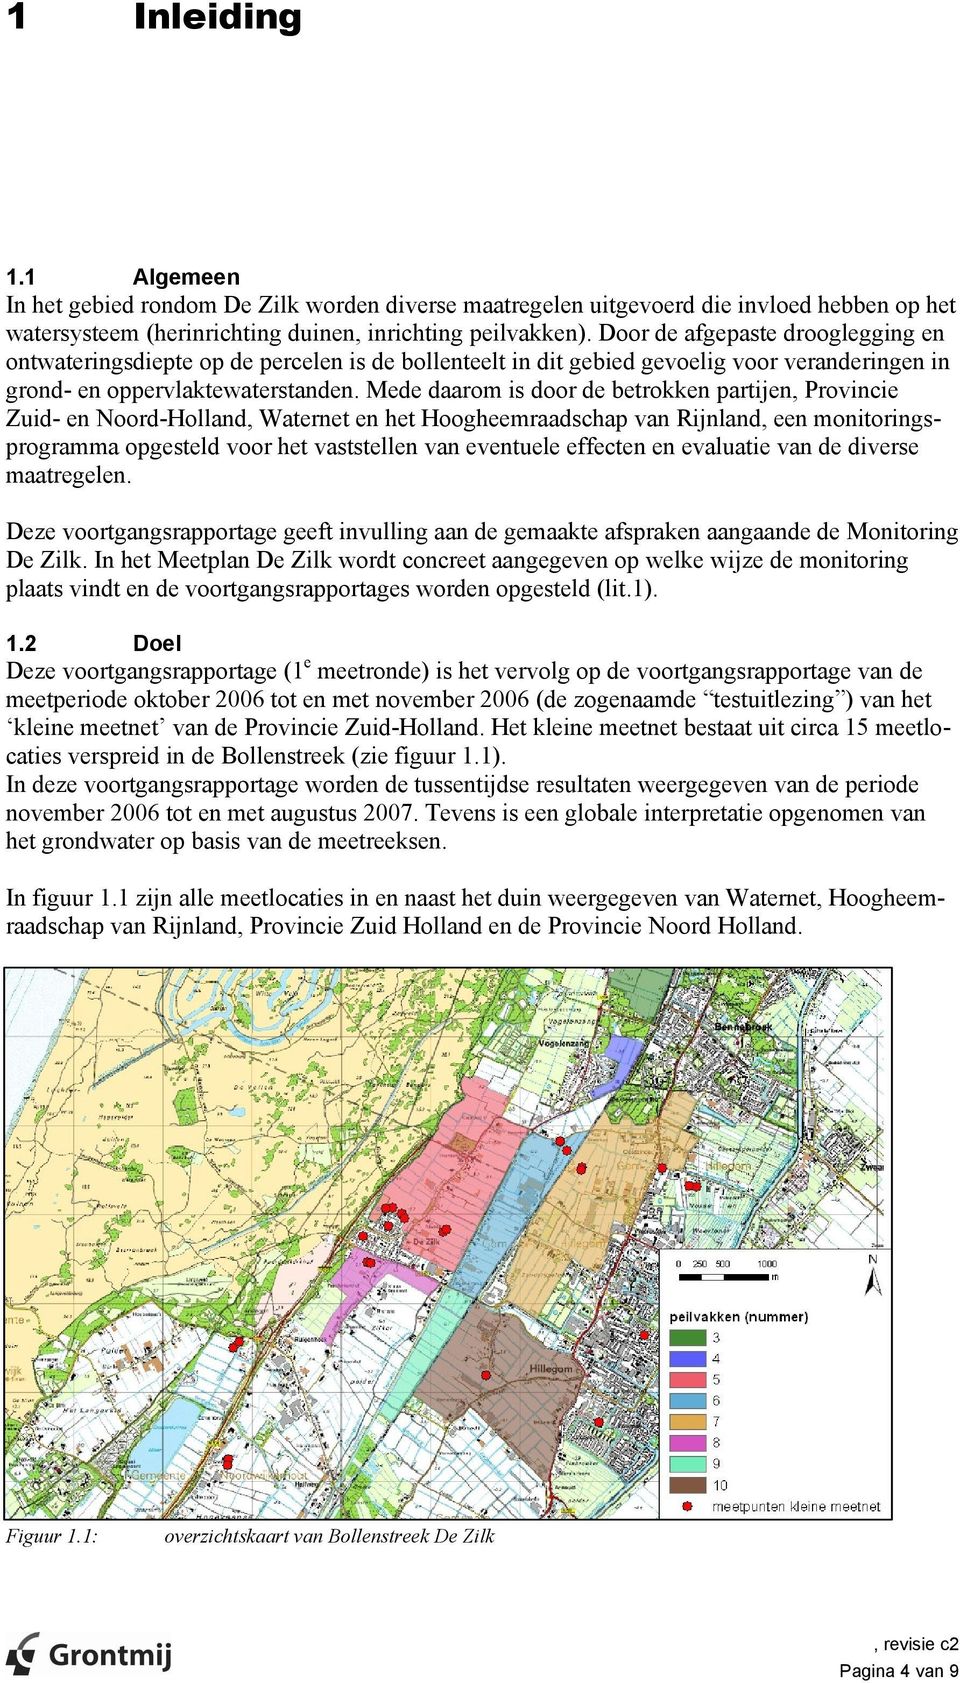 Mede daarom is door de betrokken partijen, Provincie Zuid- en Noord-Holland, Waternet en het Hoogheemraadschap van Rijnland, een monitoringsprogramma opgesteld voor het vaststellen van eventuele